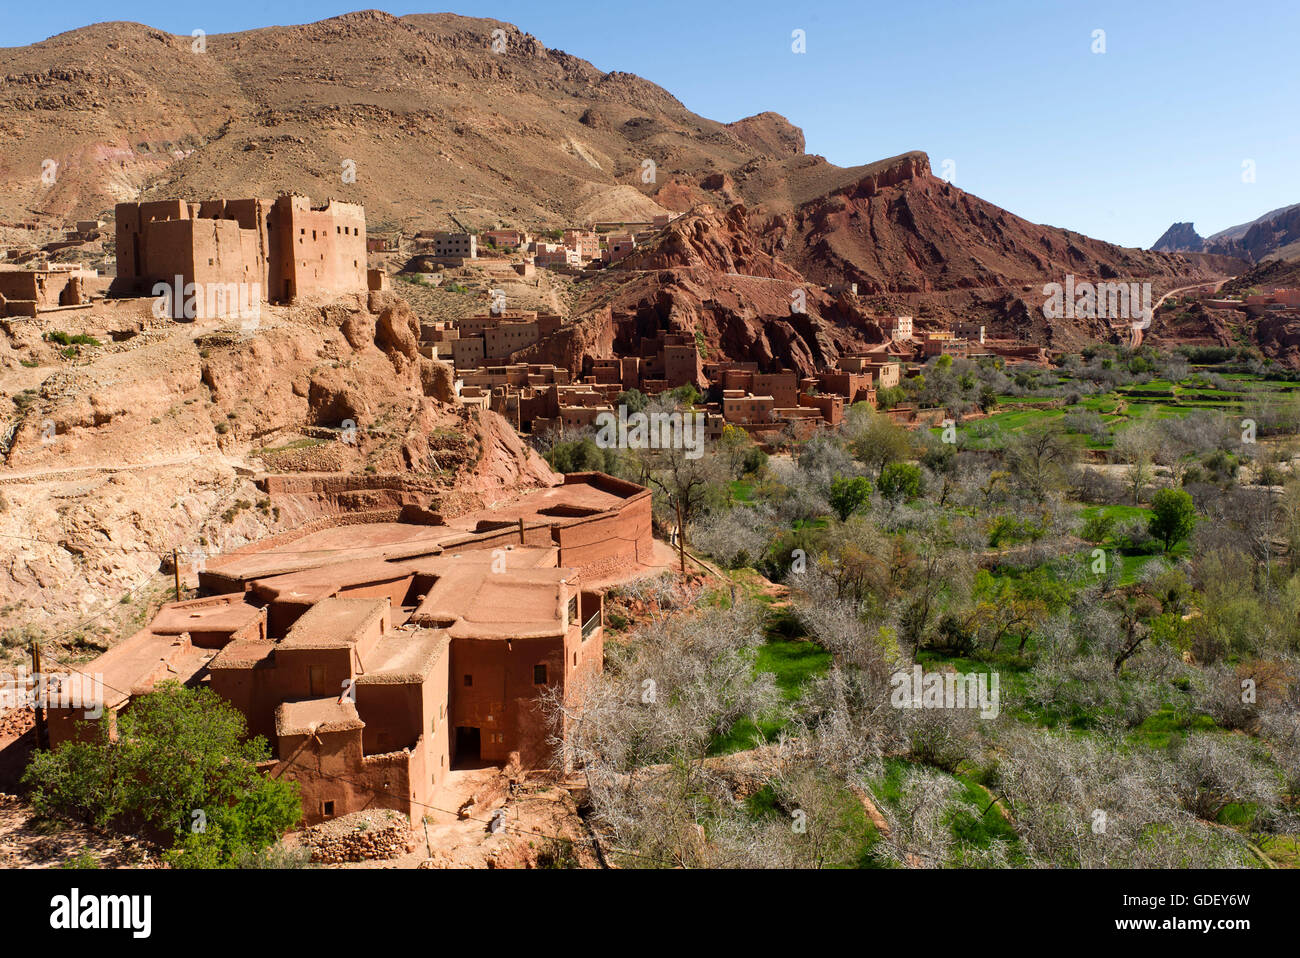 Maroc, Afrique, vallée du Dadès, la vallée du haut Atlas Kasbah, montagne, ACI Ibrirne Banque D'Images